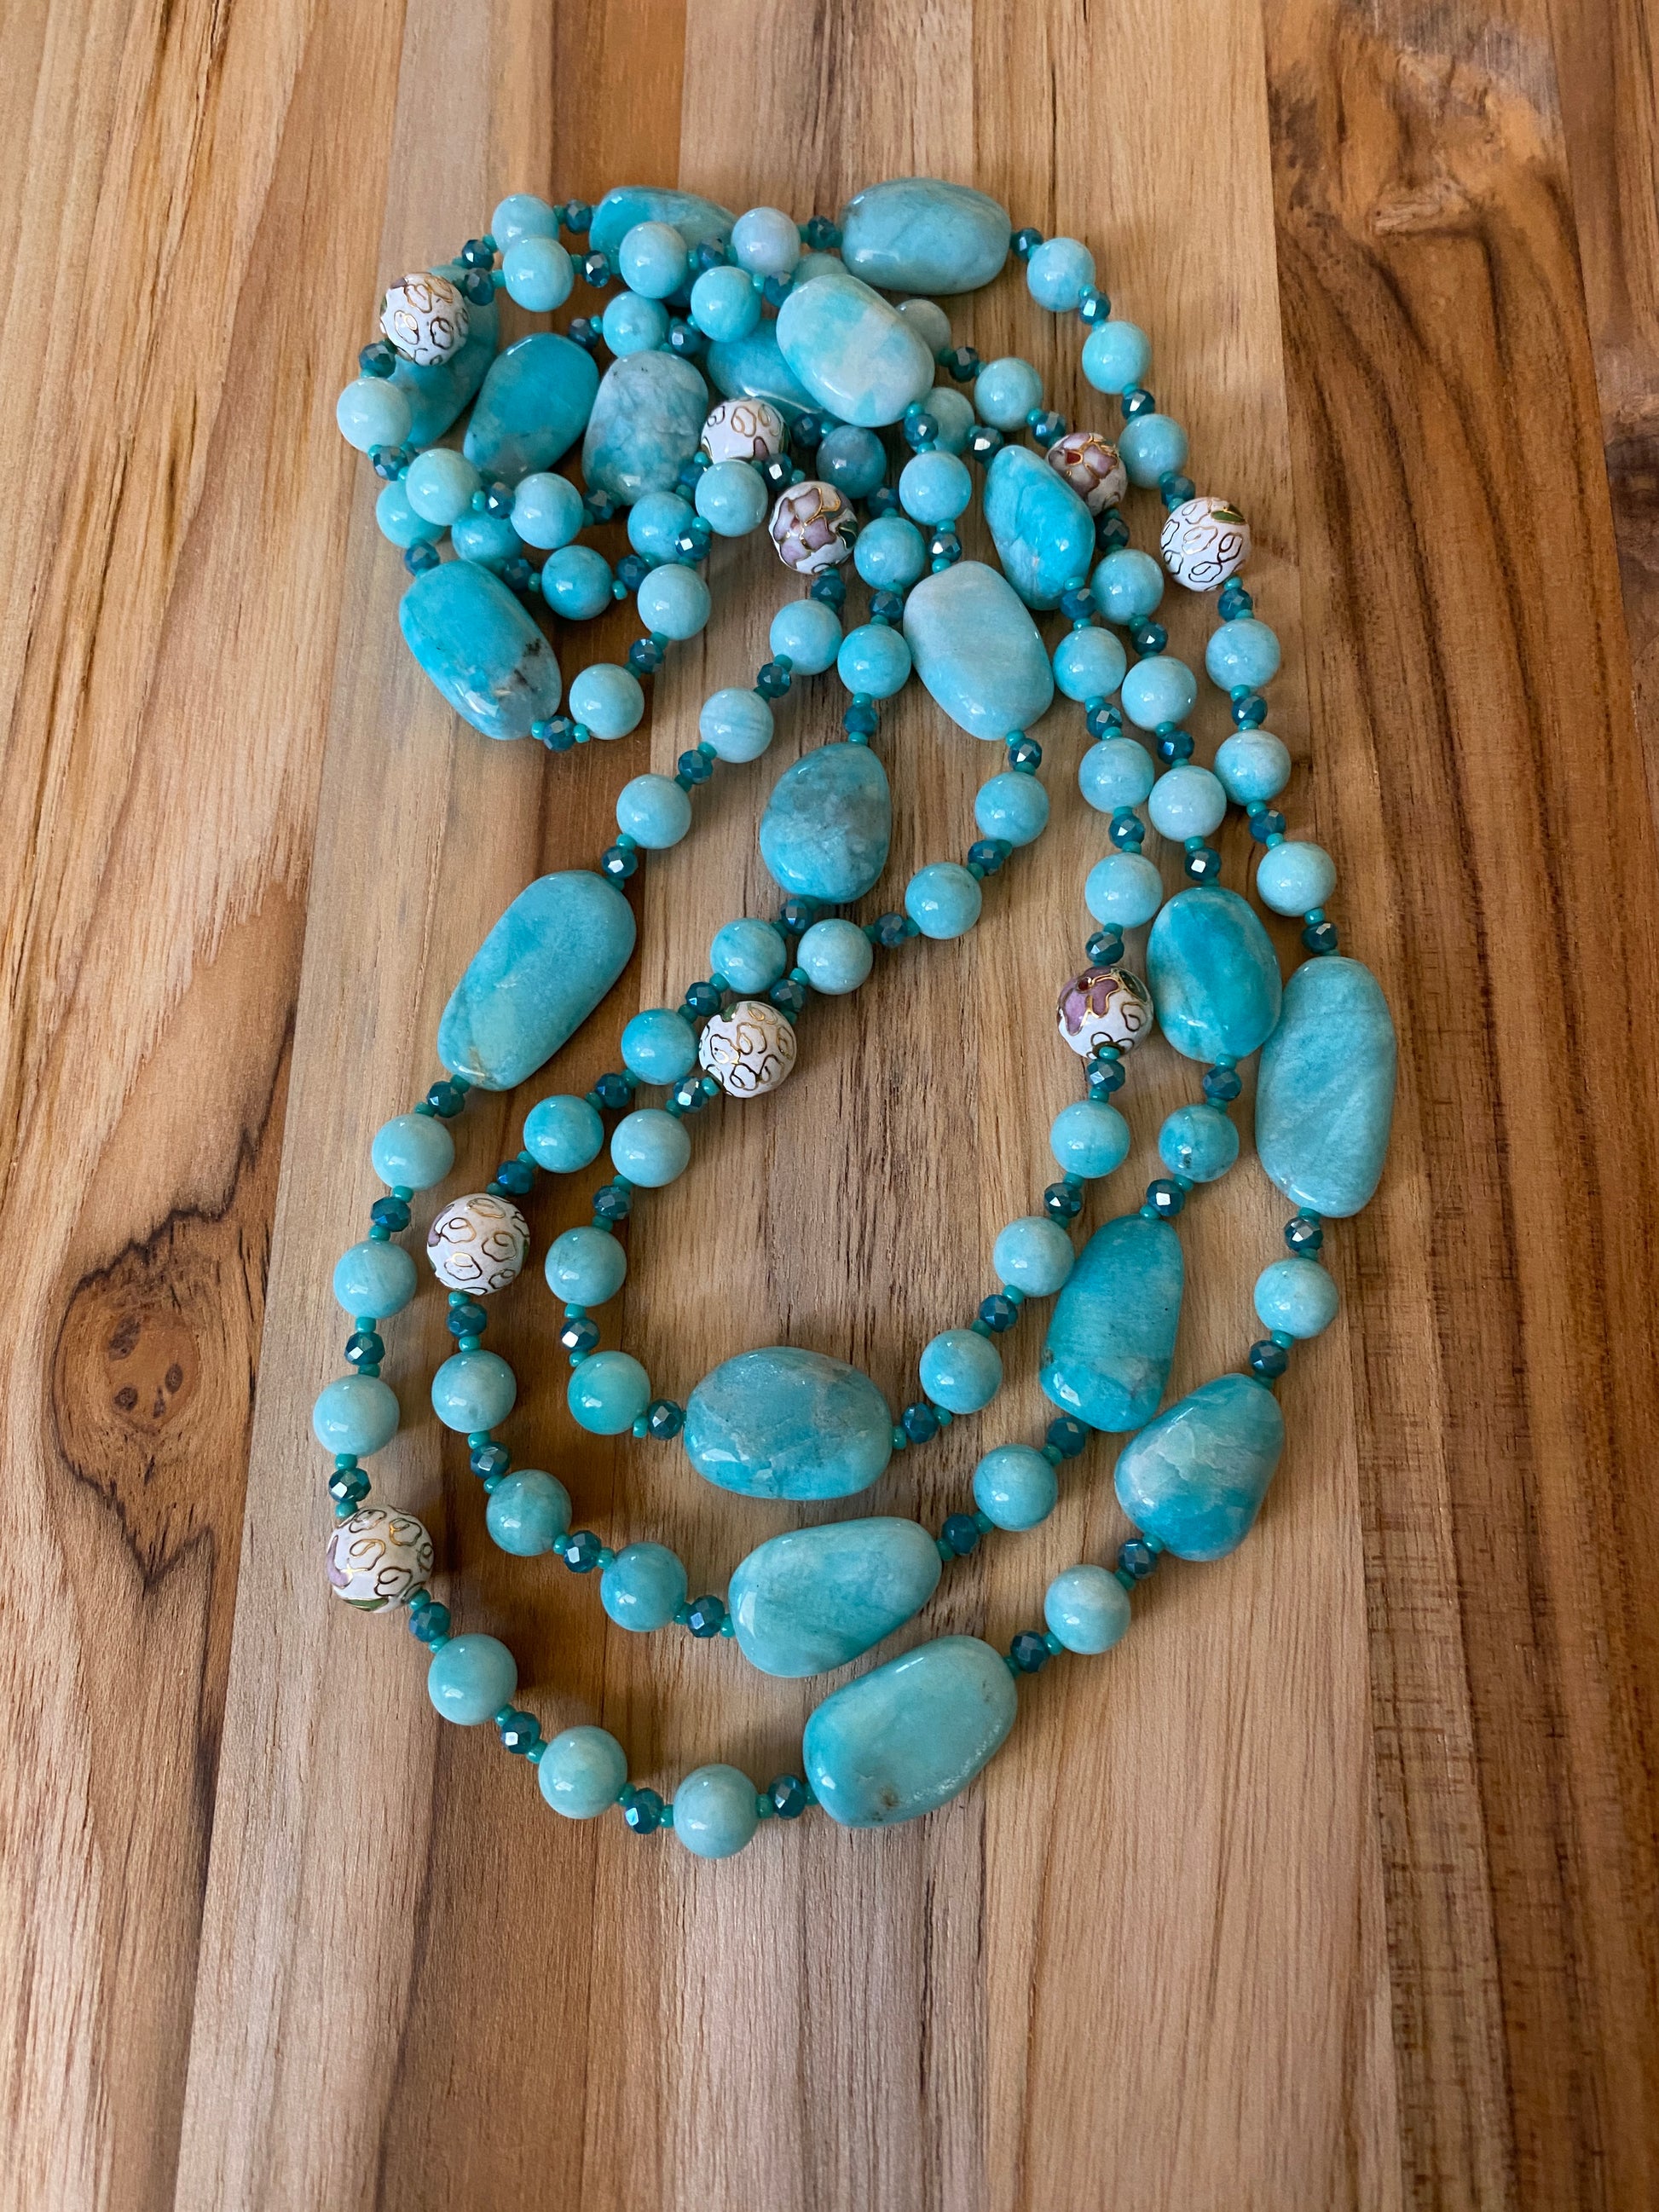 60" Extra Long Aqua Blue Beaded Amazonite Wraparound Necklace with Cloisonne & Crystal Beads My urban gems